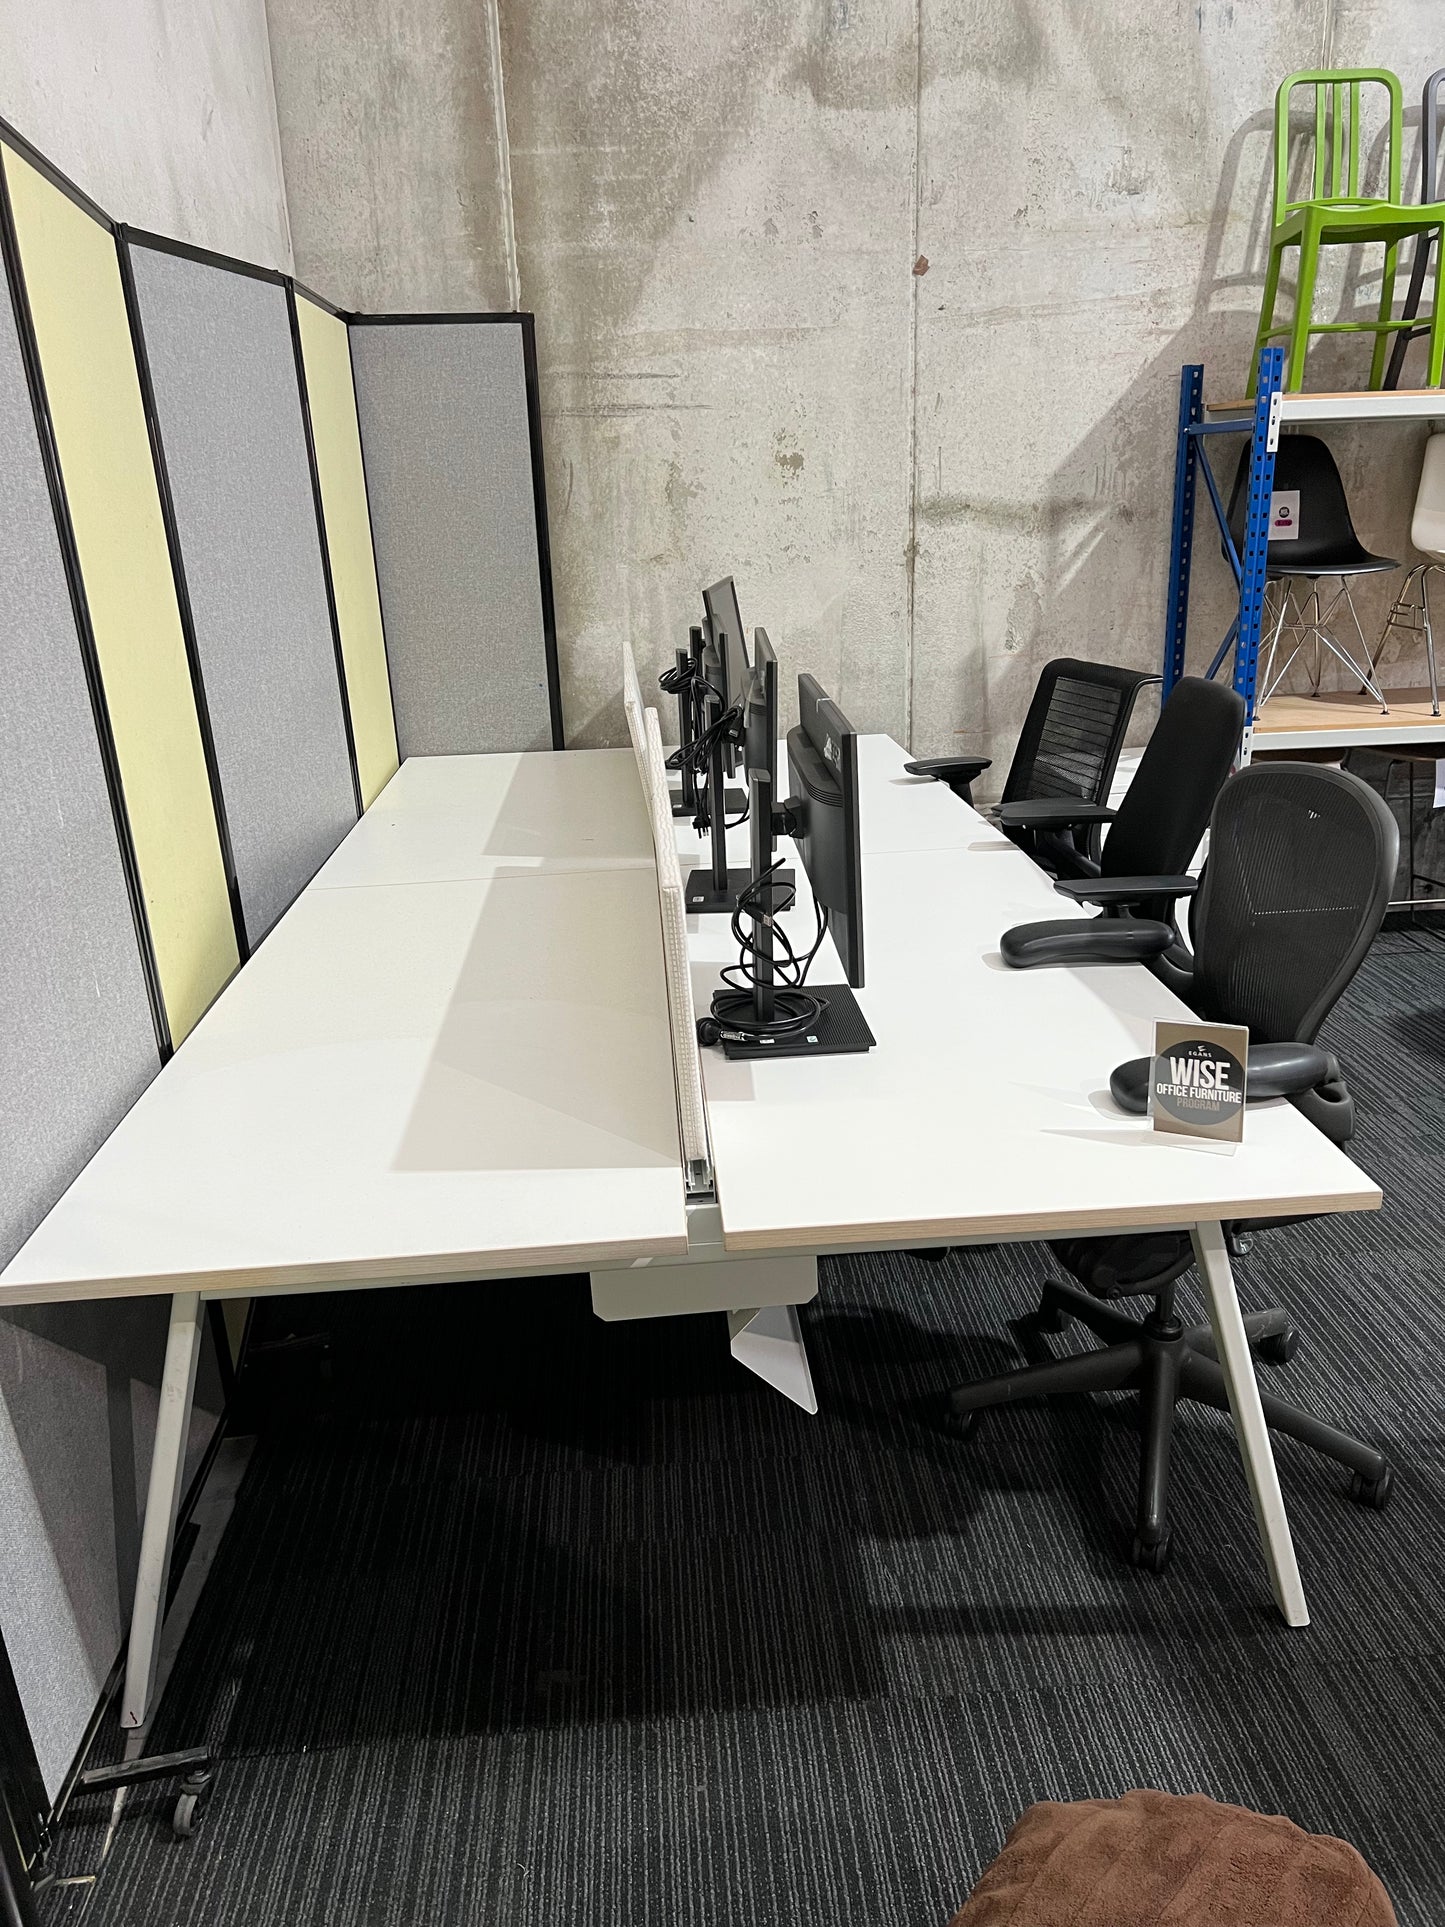 Workstation Pod of 4 Desks